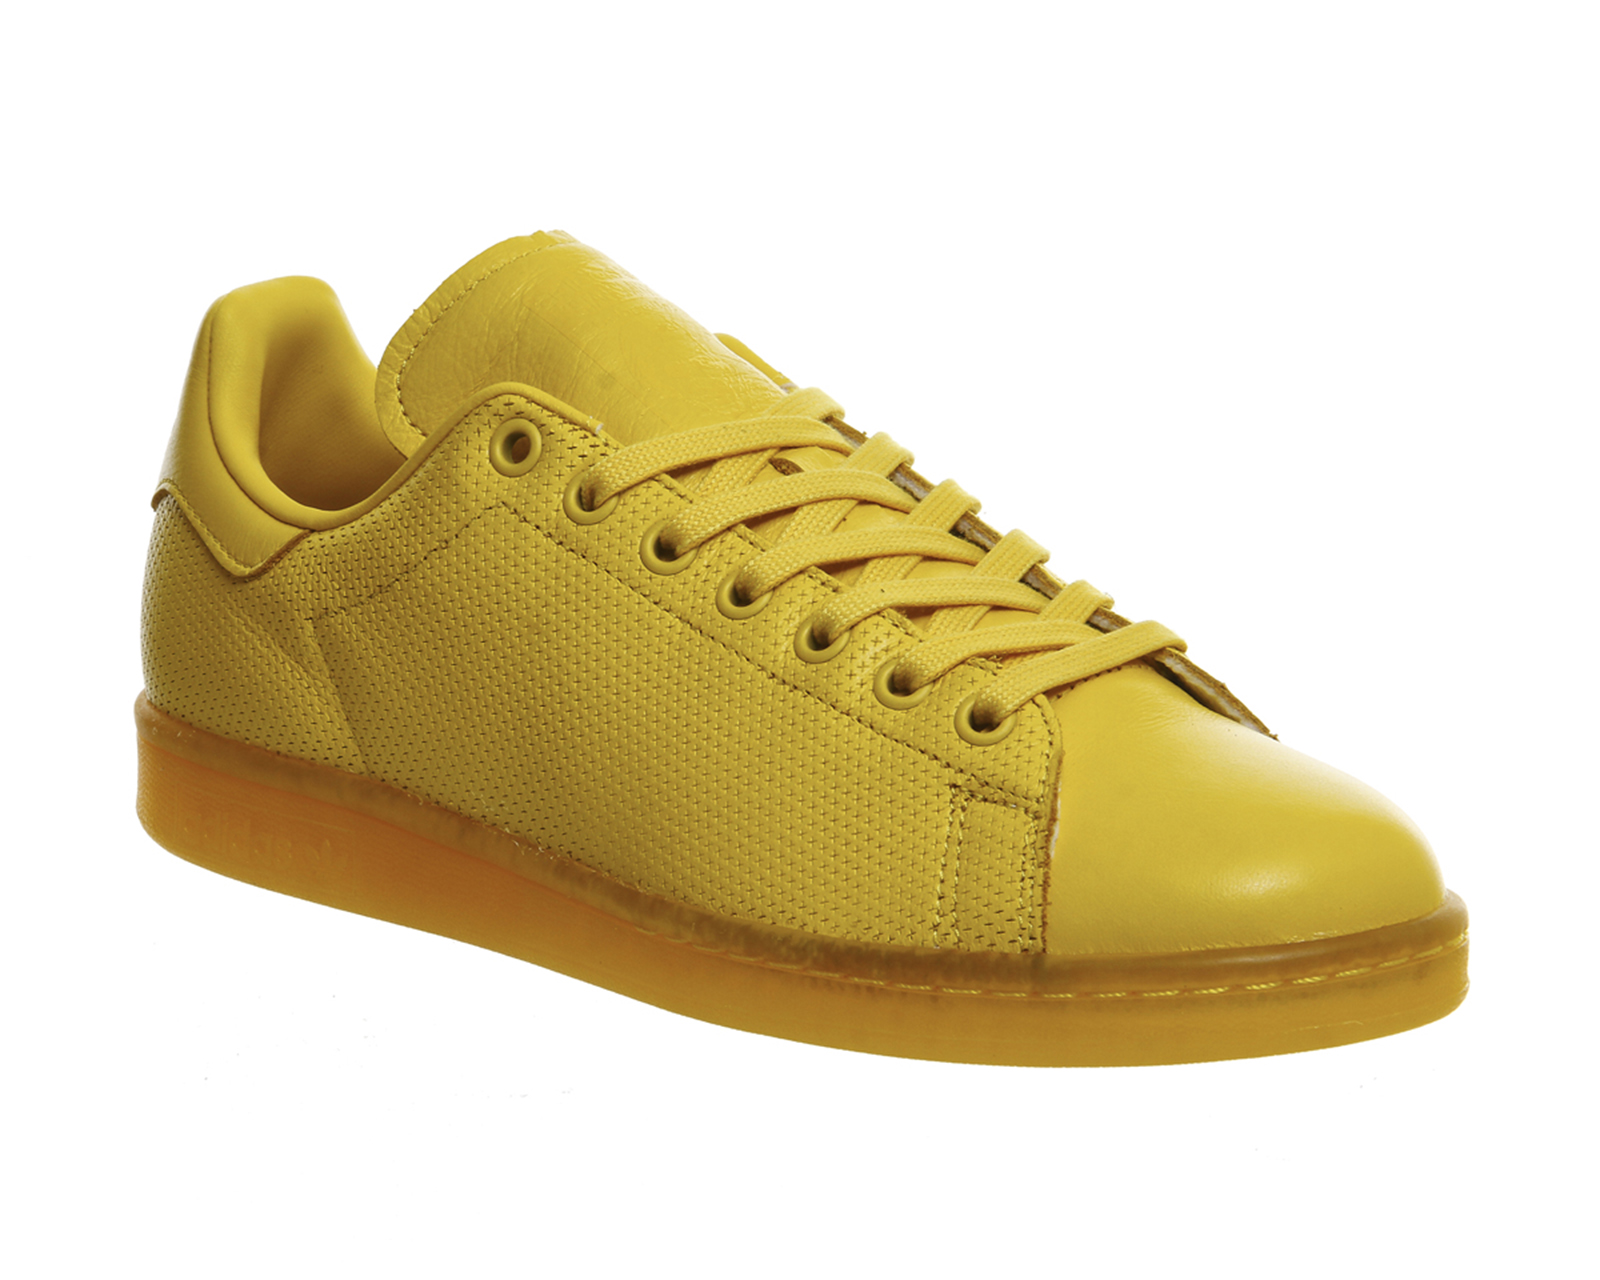 adidas Stan Smith Yellow - Unisex Sports